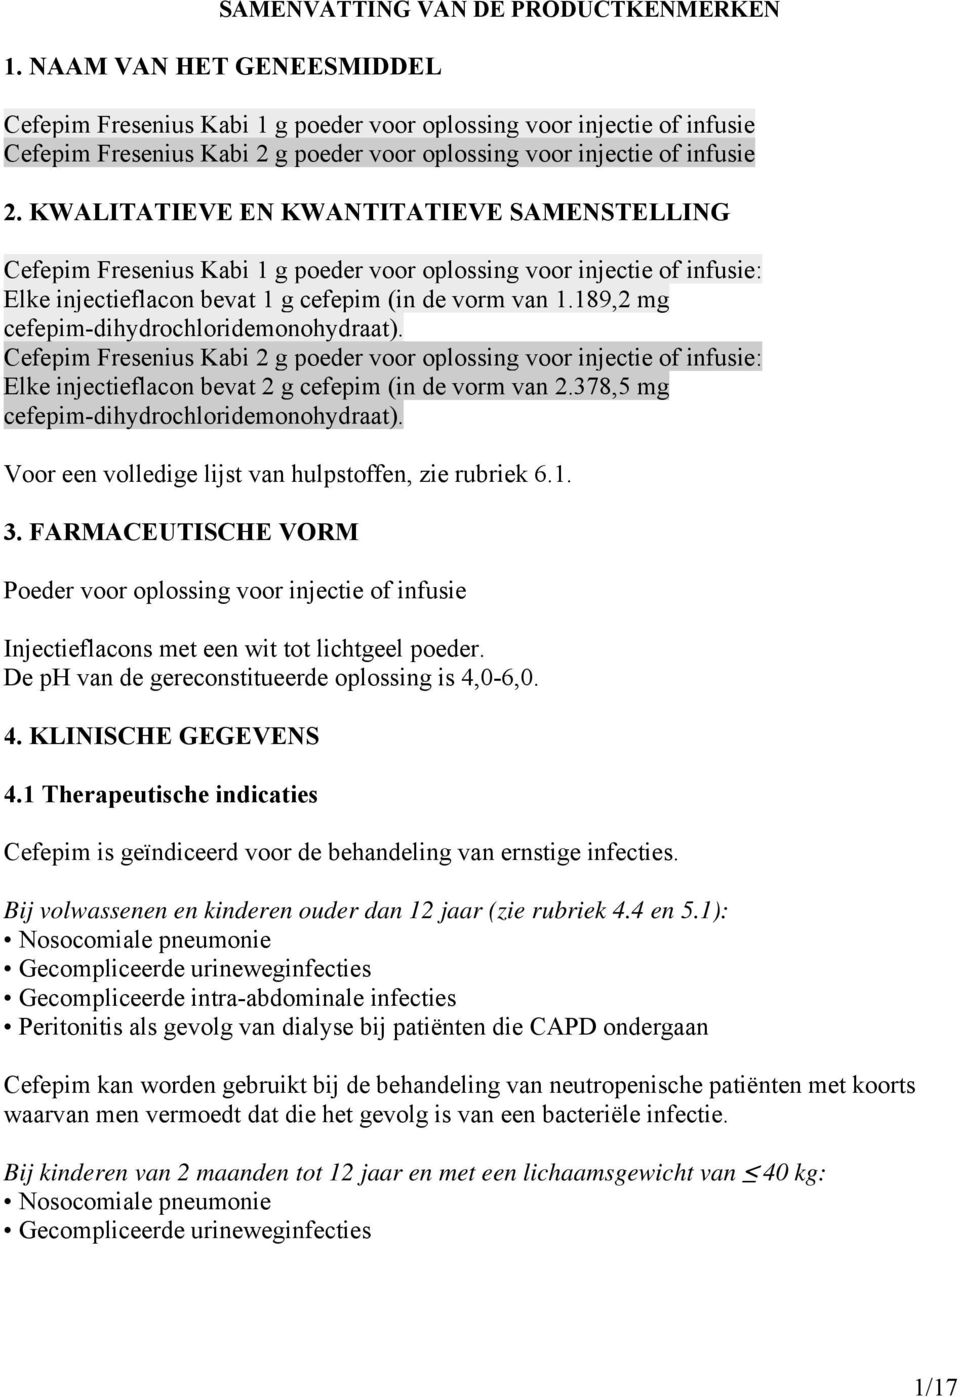 KWALITATIEVE EN KWANTITATIEVE SAMENSTELLING Cefepim Fresenius Kabi 1 g poeder voor oplossing voor injectie of infusie: Elke injectieflacon bevat 1 g cefepim (in de vorm van 1.